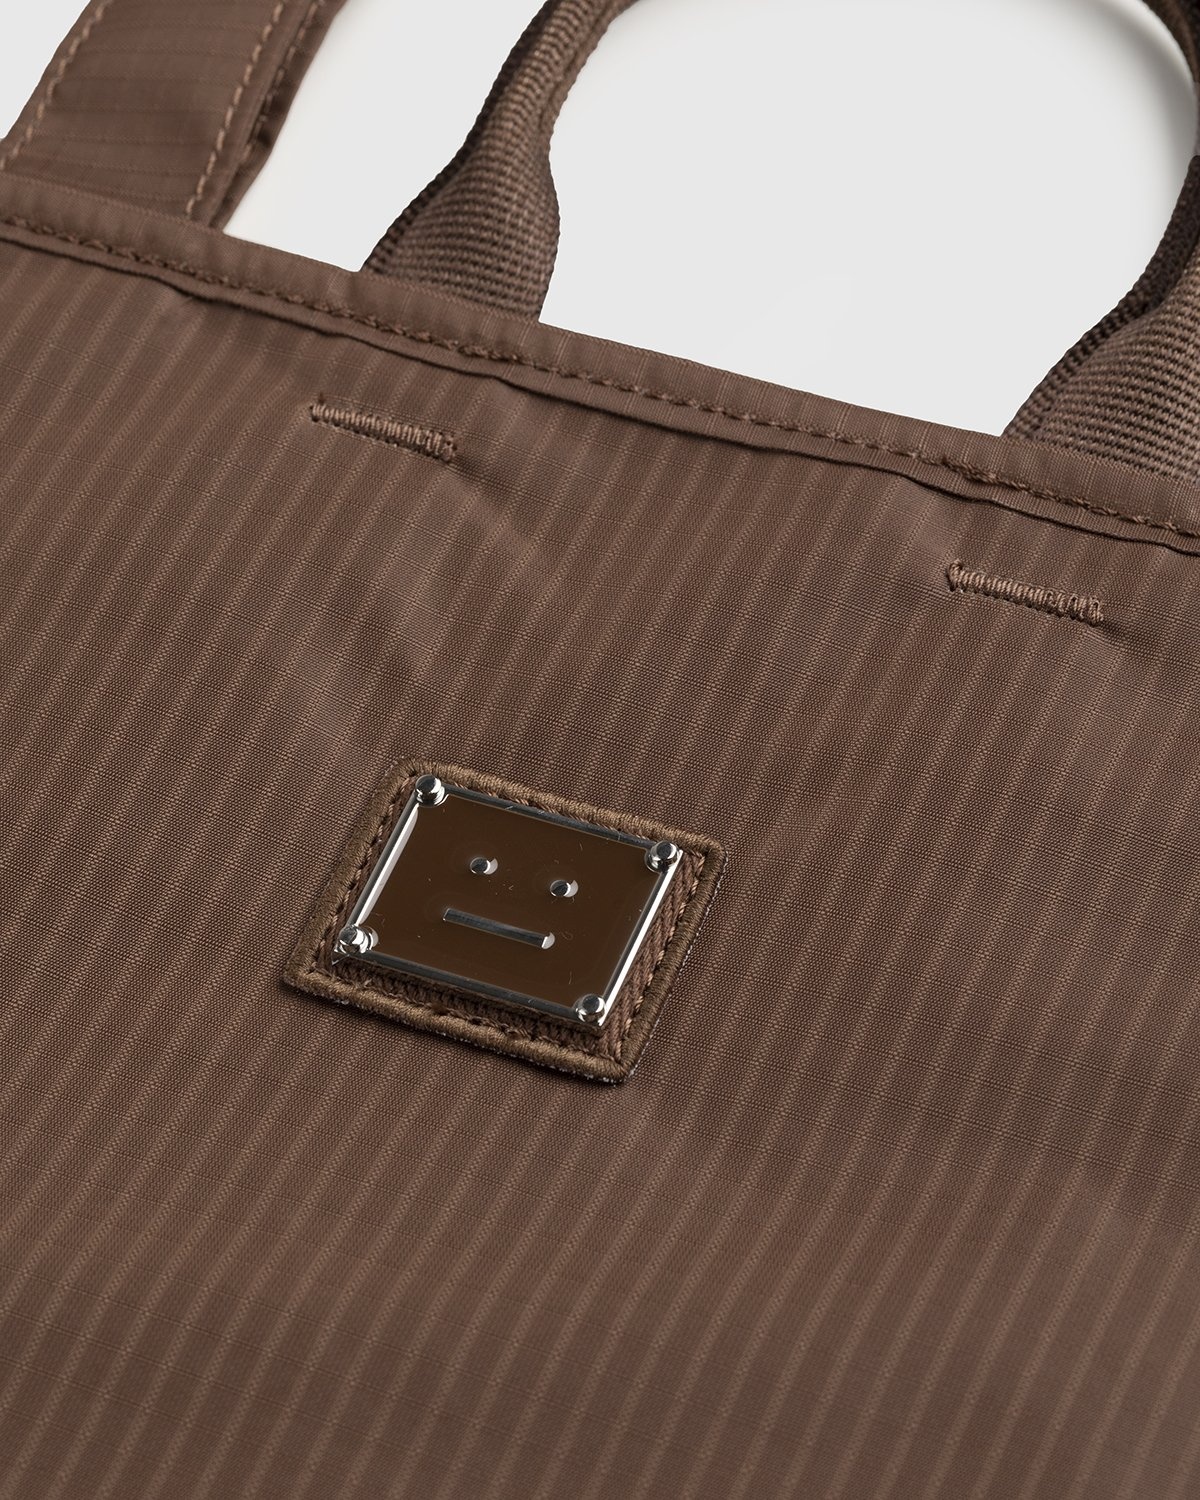 Acne Studios – Shoulder Tote Bag Brown - Tote Bags - Brown - Image 3